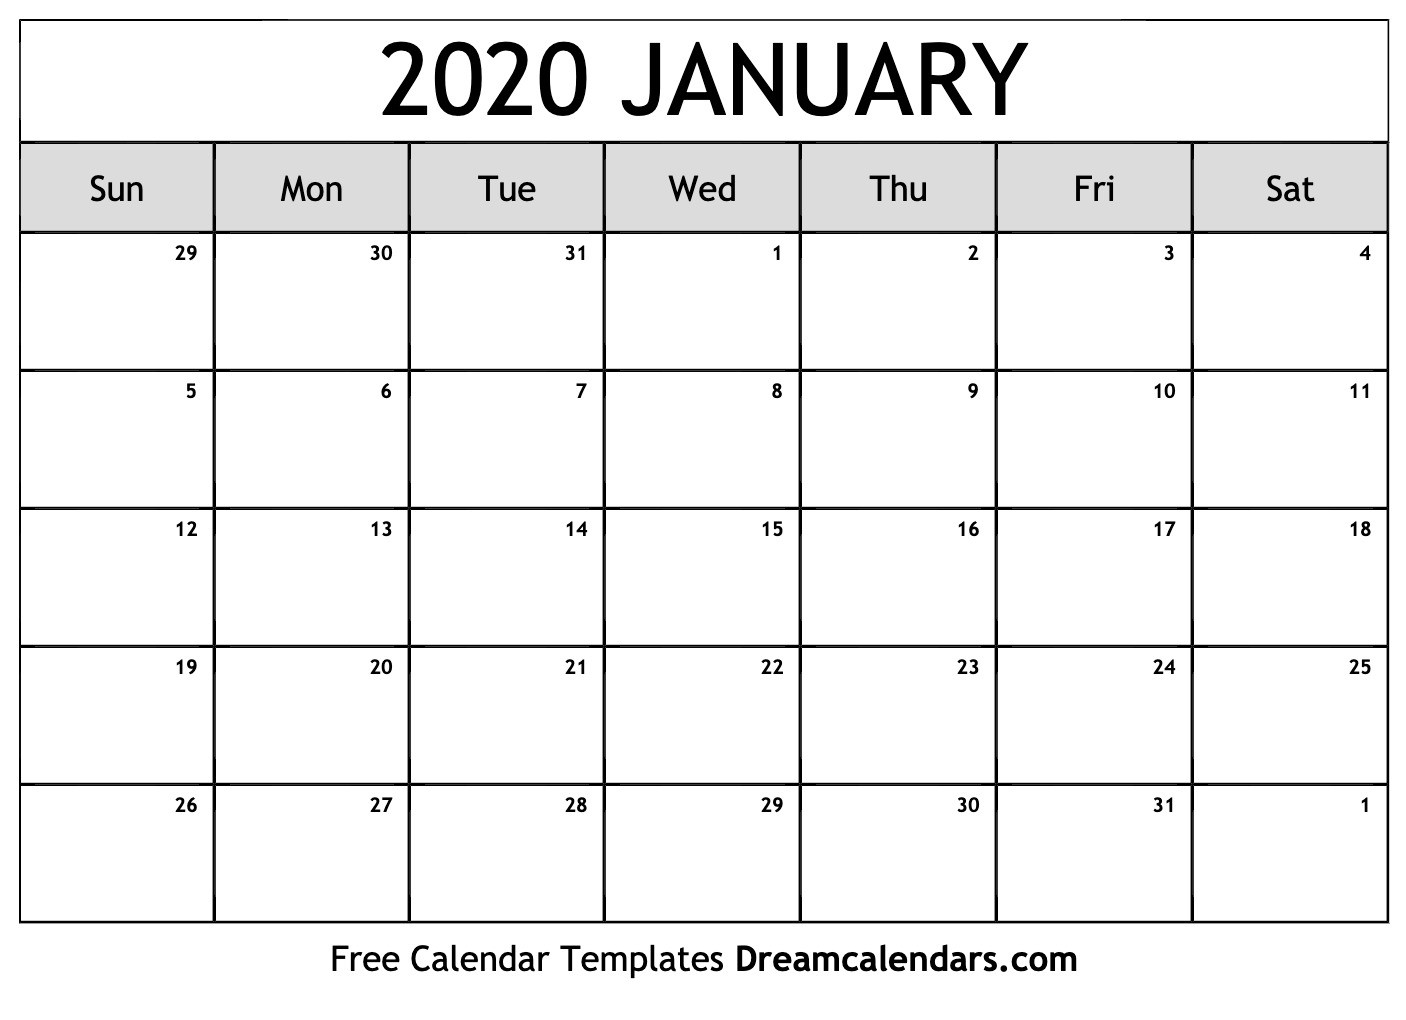 Dream Calendars - Make Your Calendar Template Blog-2020 Calendar With Holidays Inc Jewish